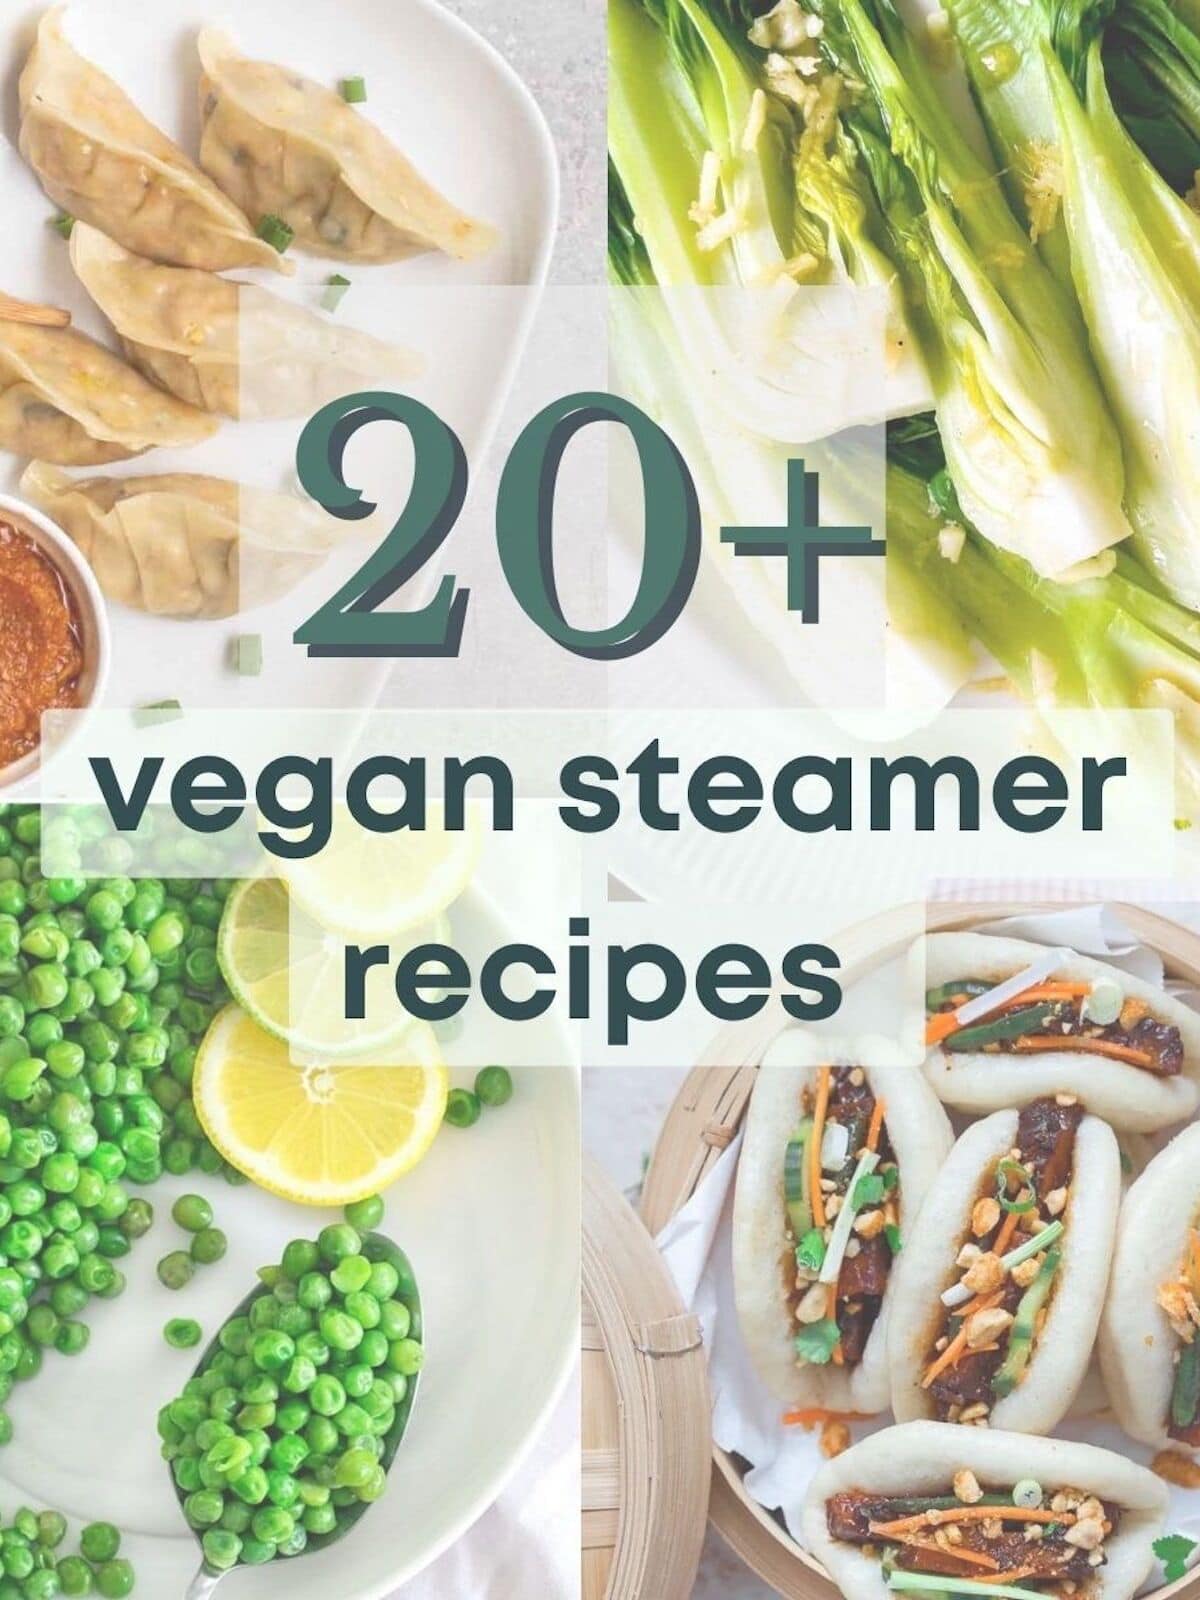 20+ Vegan Steamer Recipes: Veggies, Dumplings, & More!